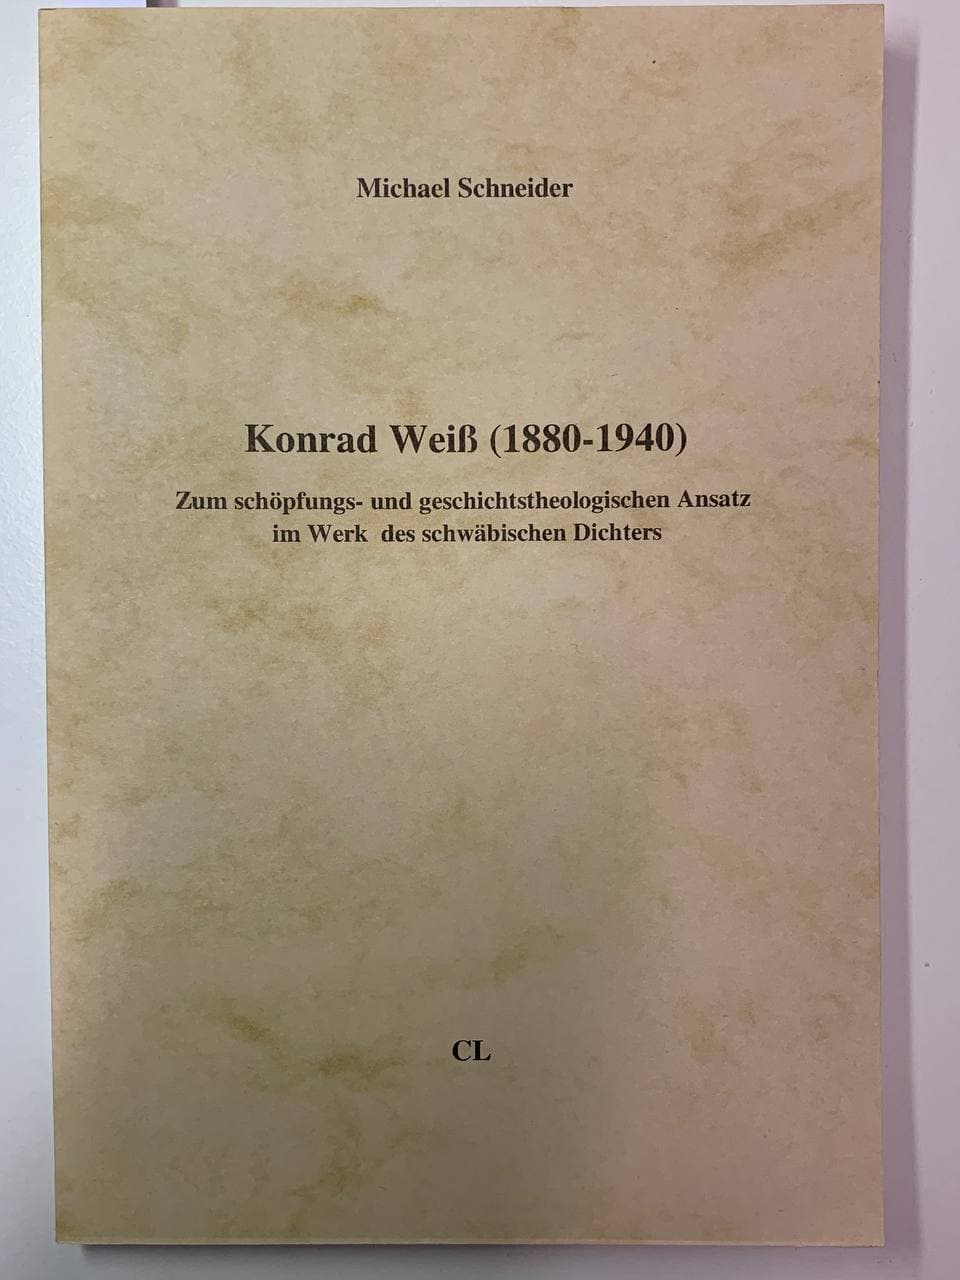 Konrad Weiß (1880 - 1940) Zum schöpfungs- und geschichtstheologischen Ansatz im Werk des schwäbischen Dichters - Michael Schneider